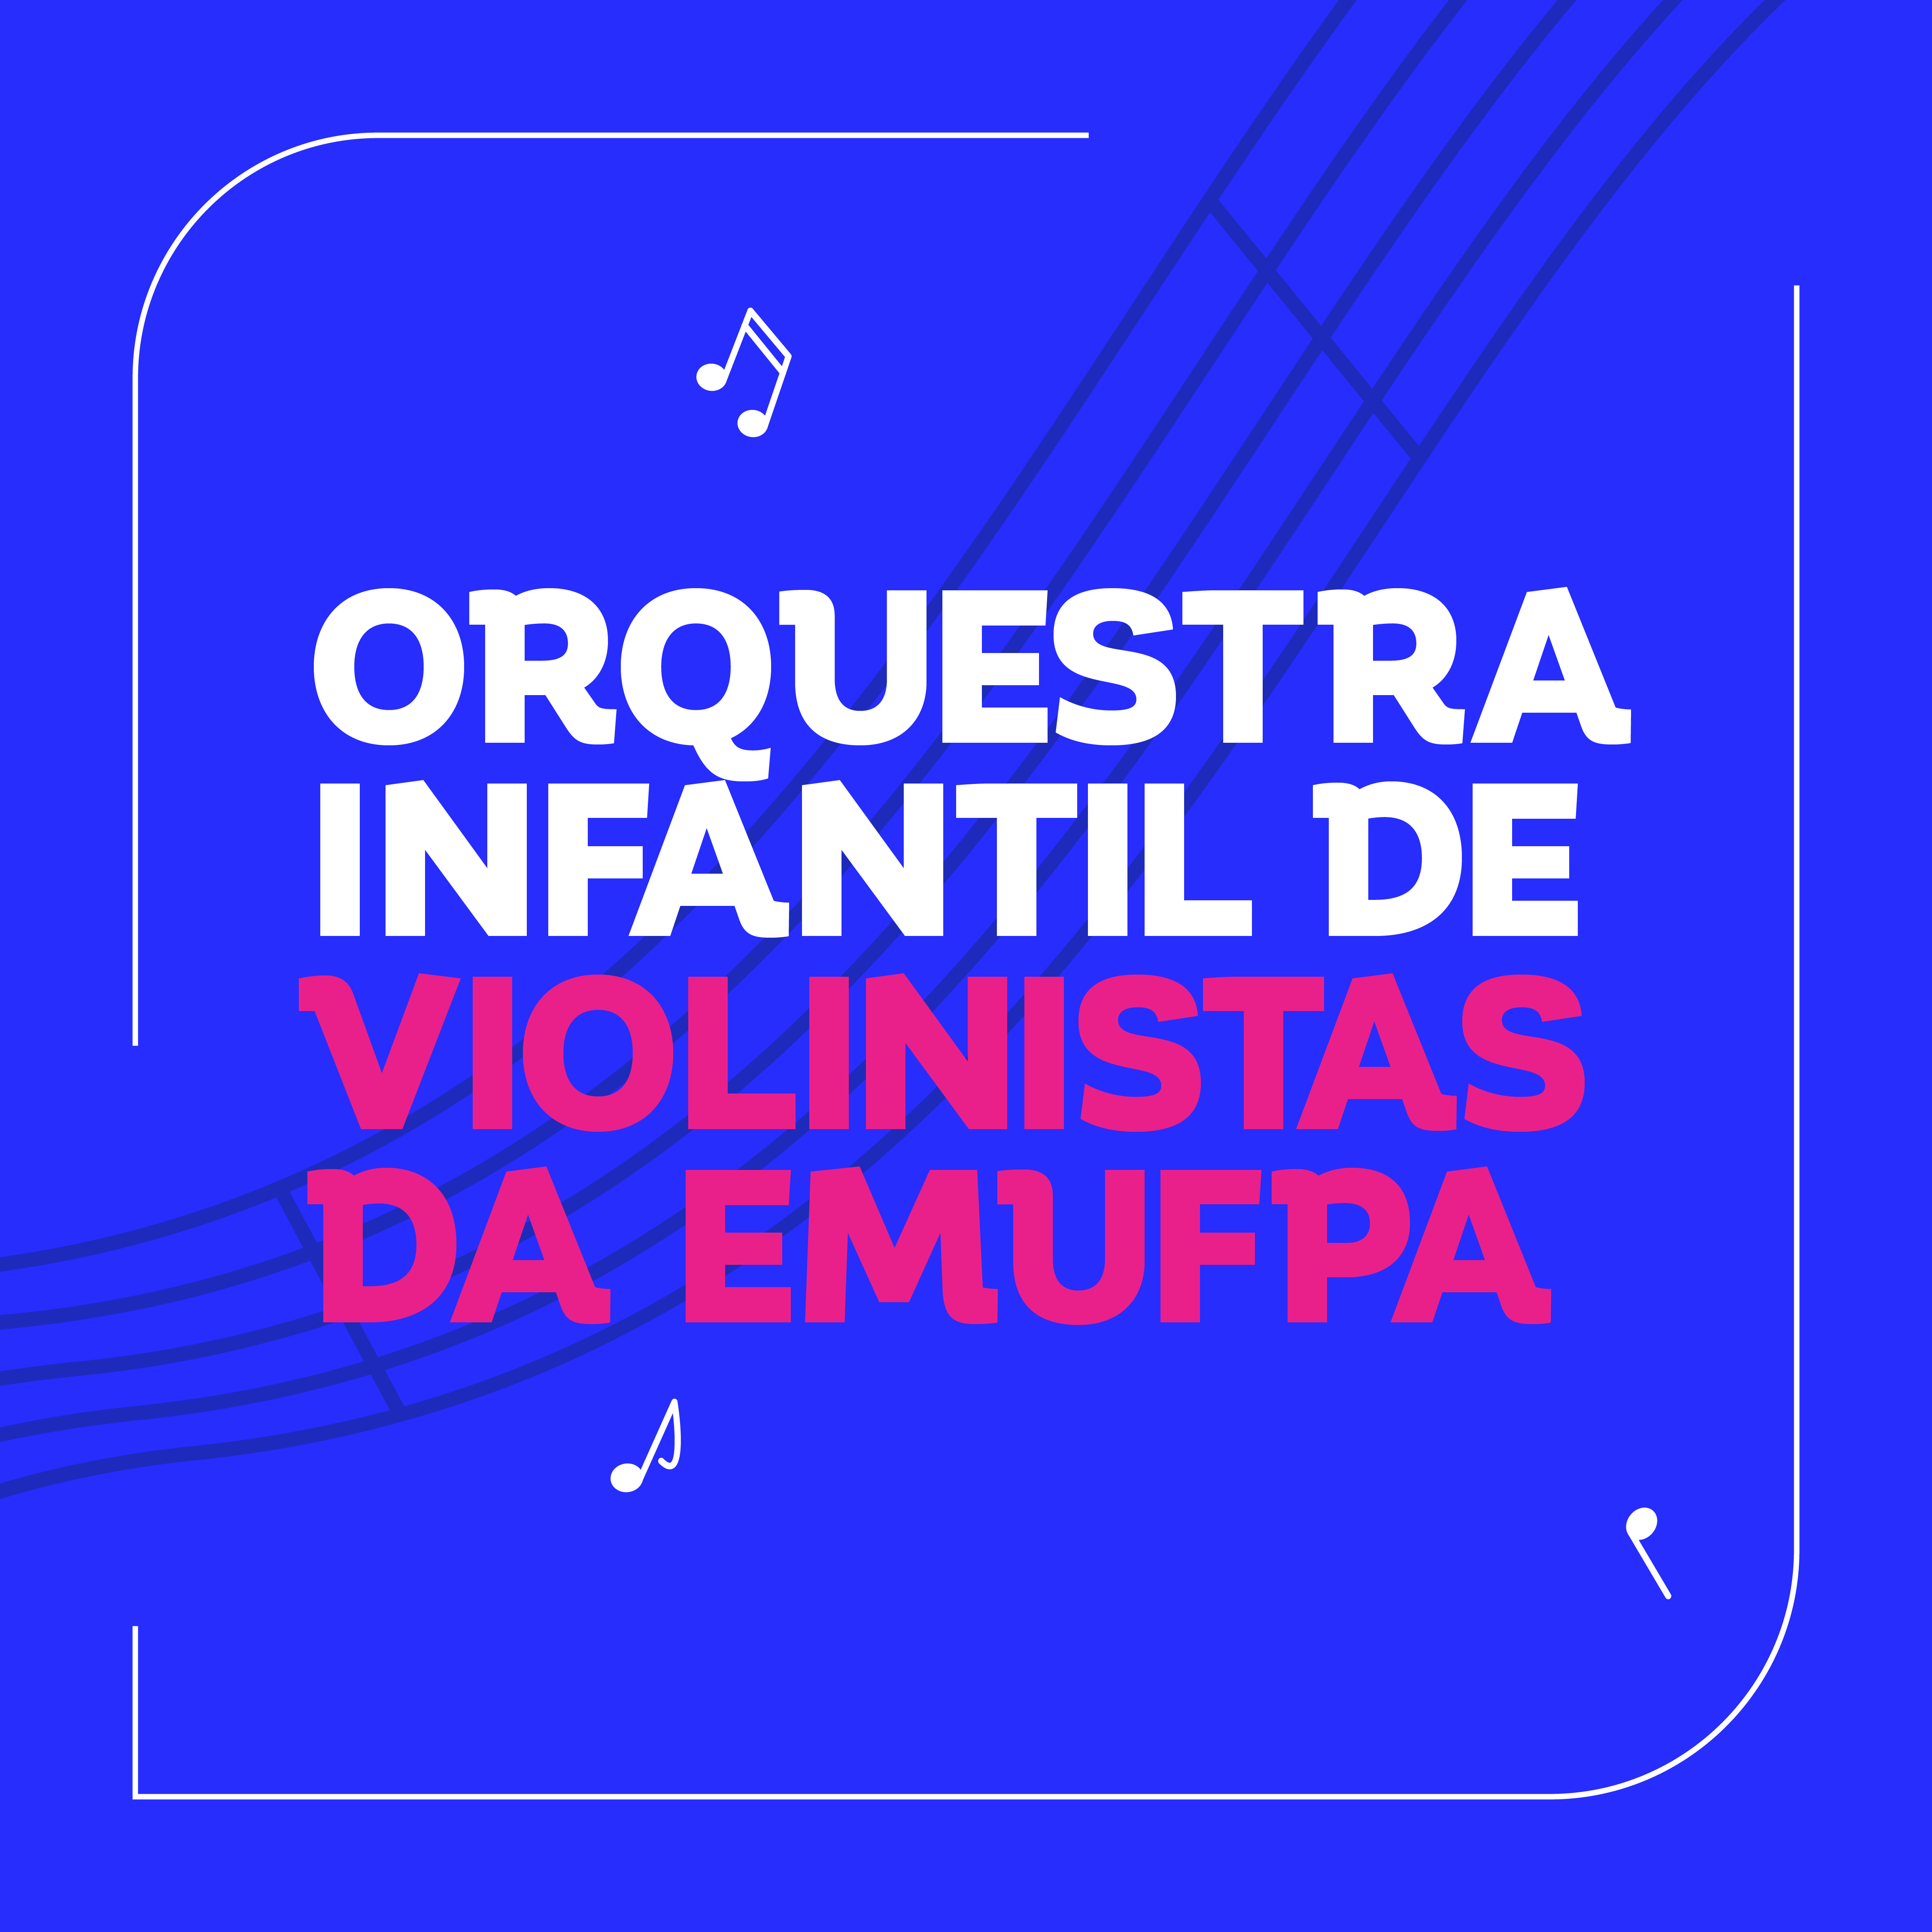 Orquestra Infantil de Violinistas da EMUFPA